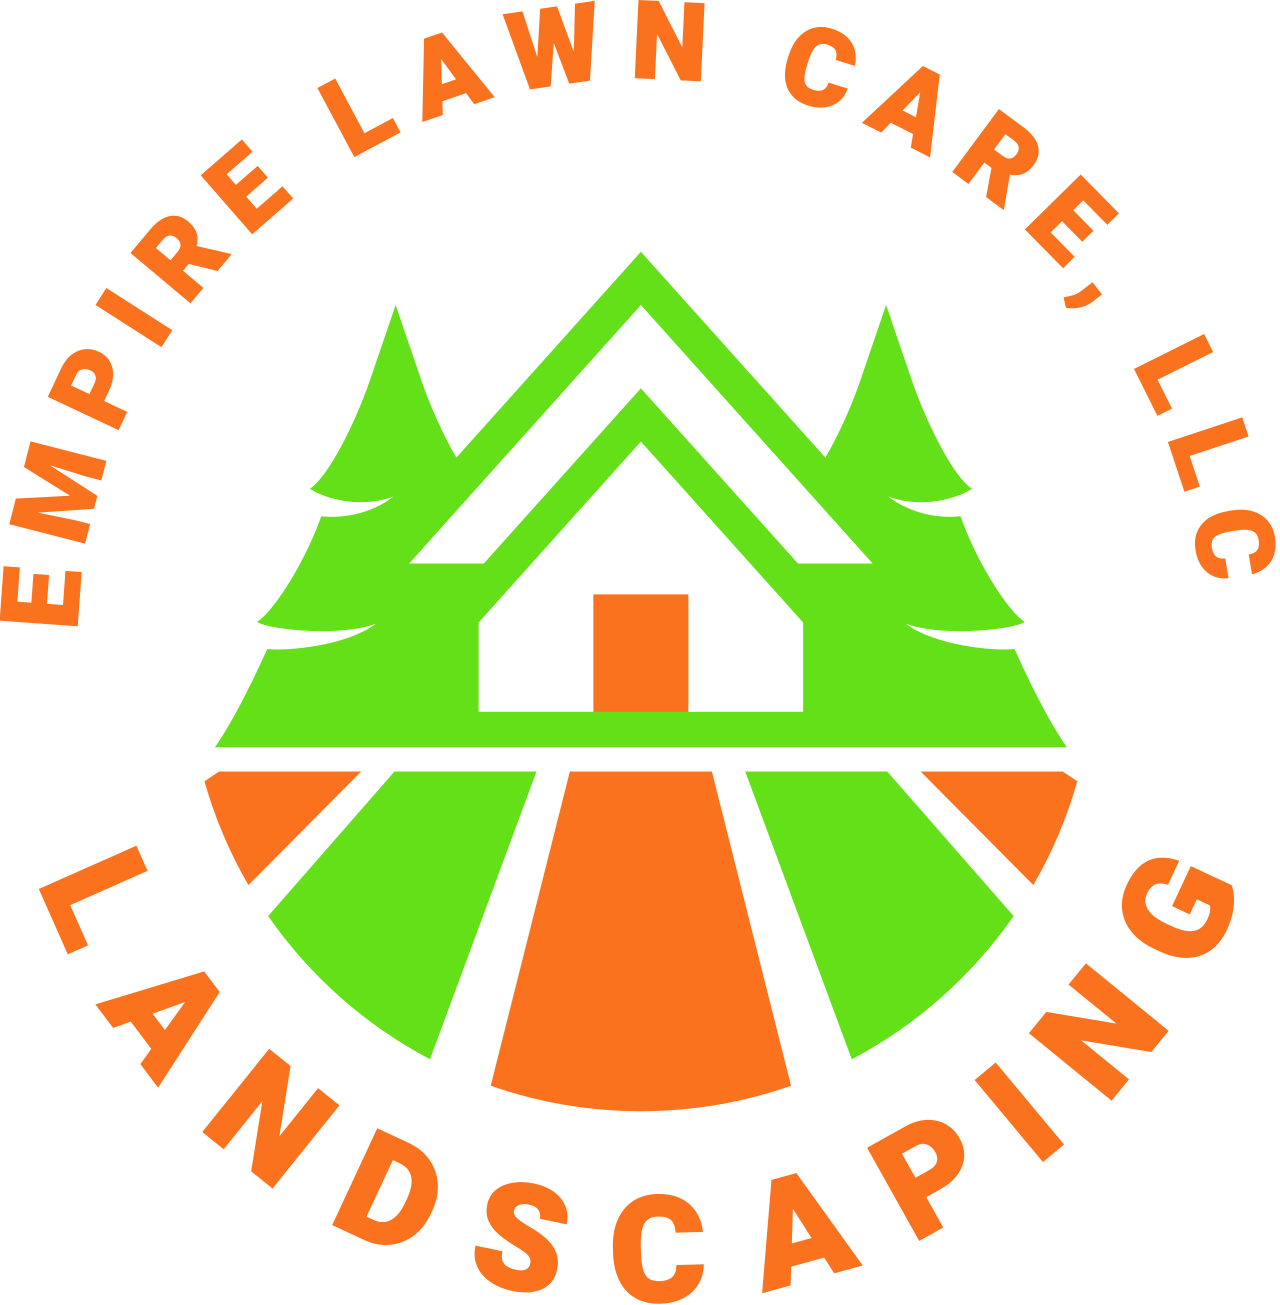 EMPIRE LAWN CARE, LLC 's web page